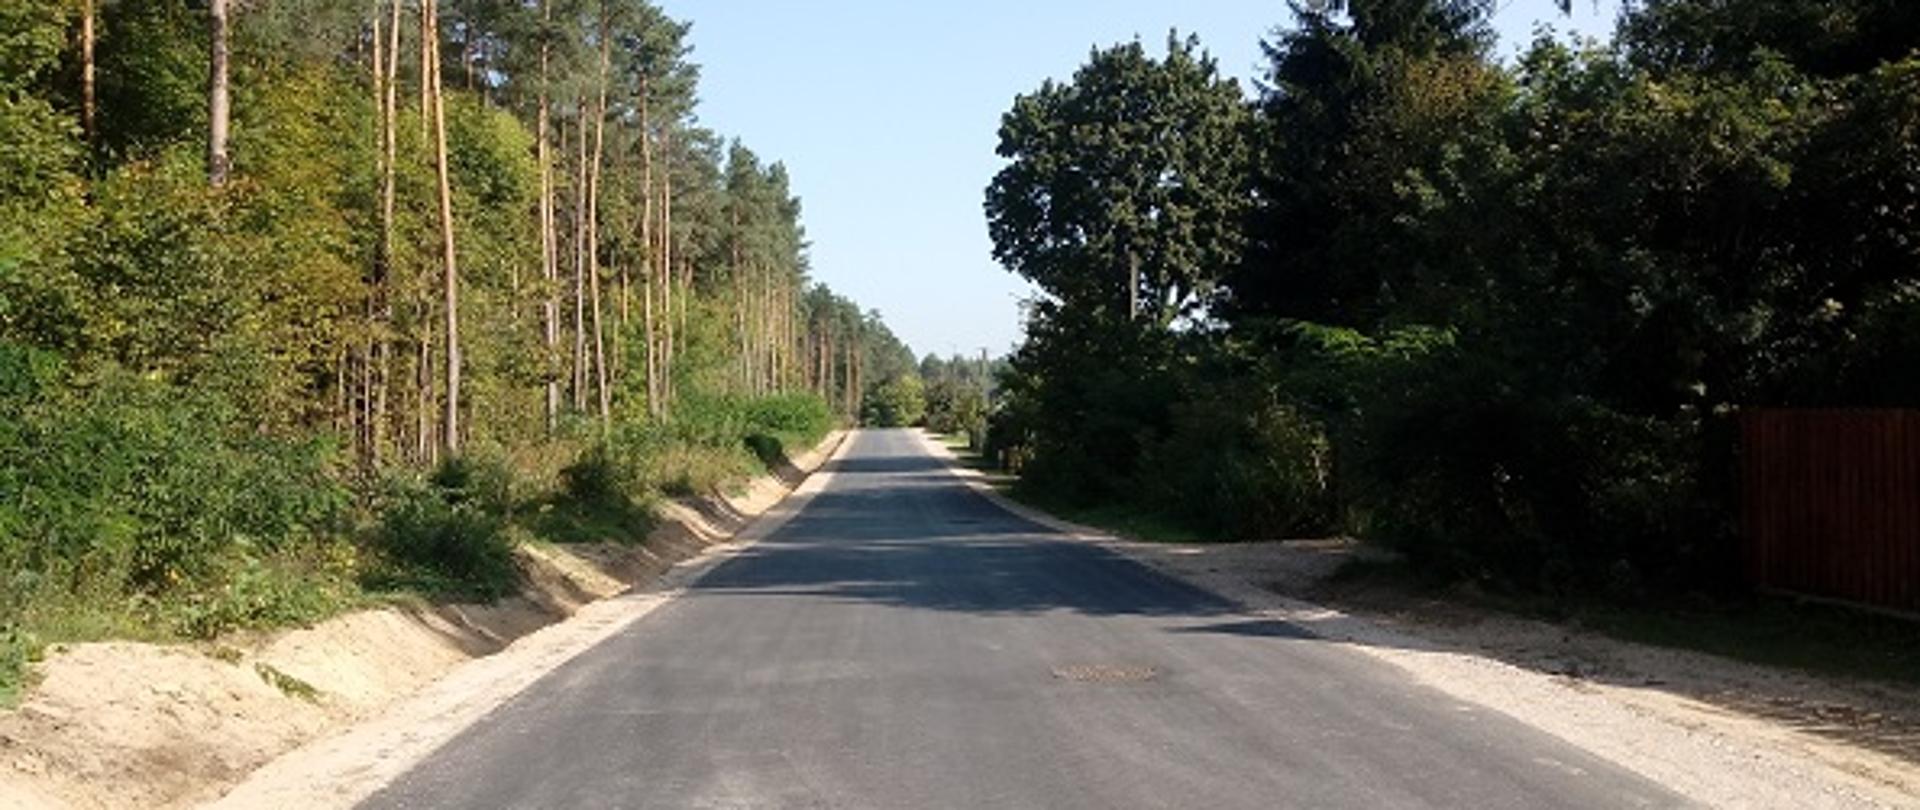 Na zdjęciu widoczna nowo wybudowana droga asfaltowa w Trzciance. Po lewej stronie drogi znajduje się rów oraz las. Po lewej stronie widać płot ogradzający posesję oraz drzewa.